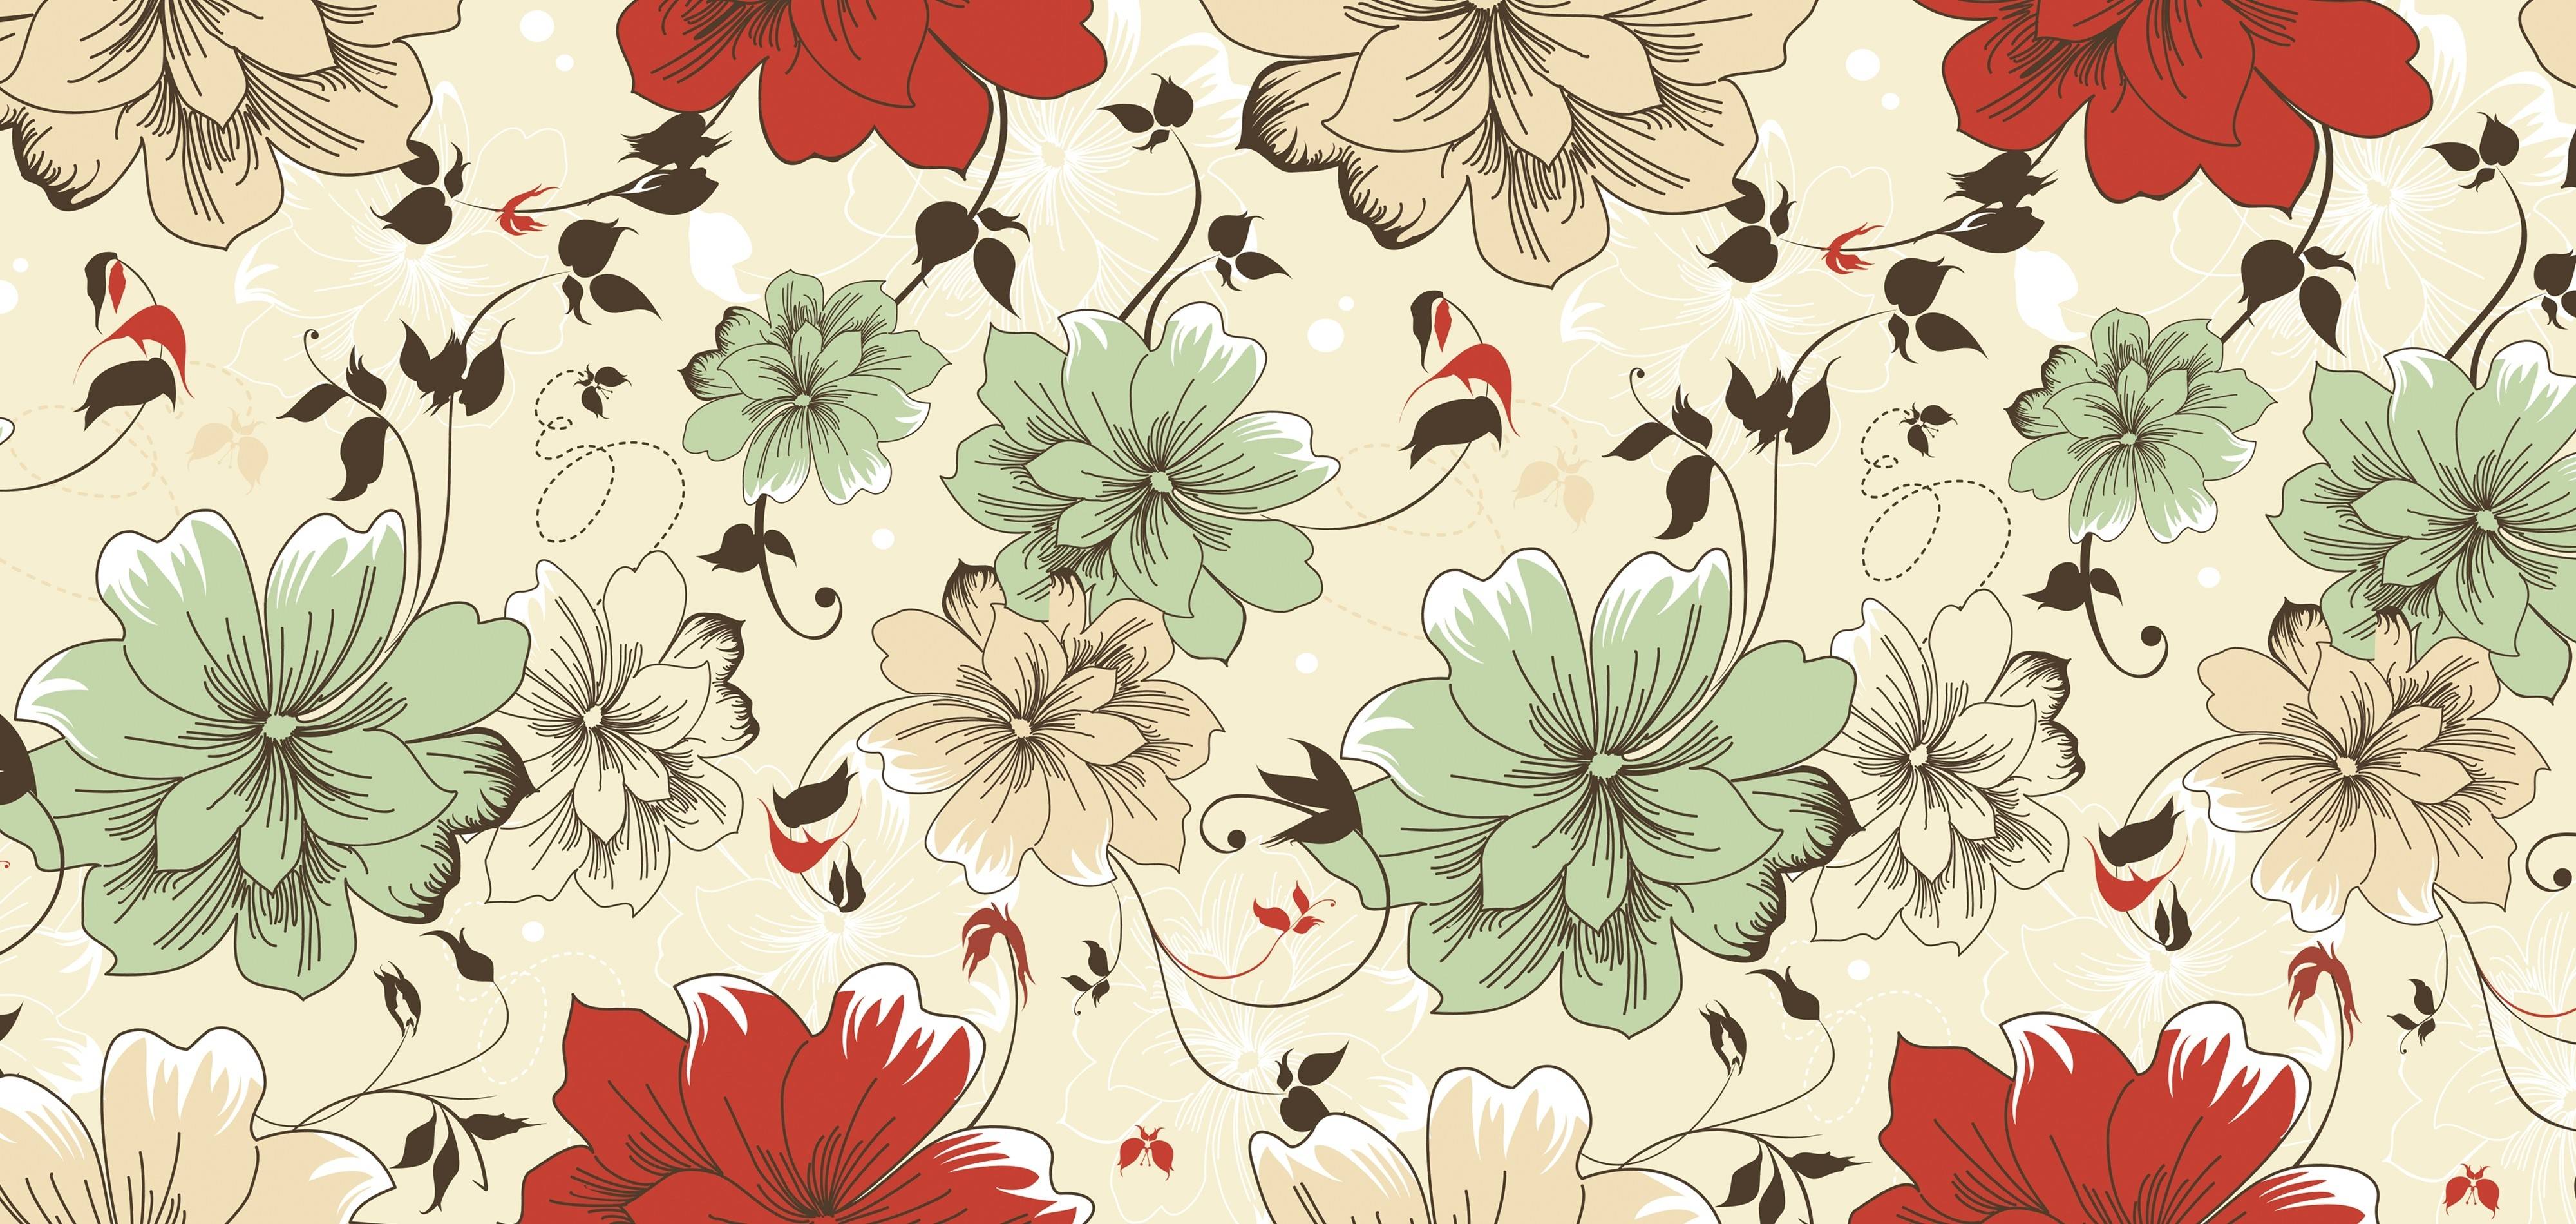 Wallpaper For > Desktop Wallpaper Vintage Floral